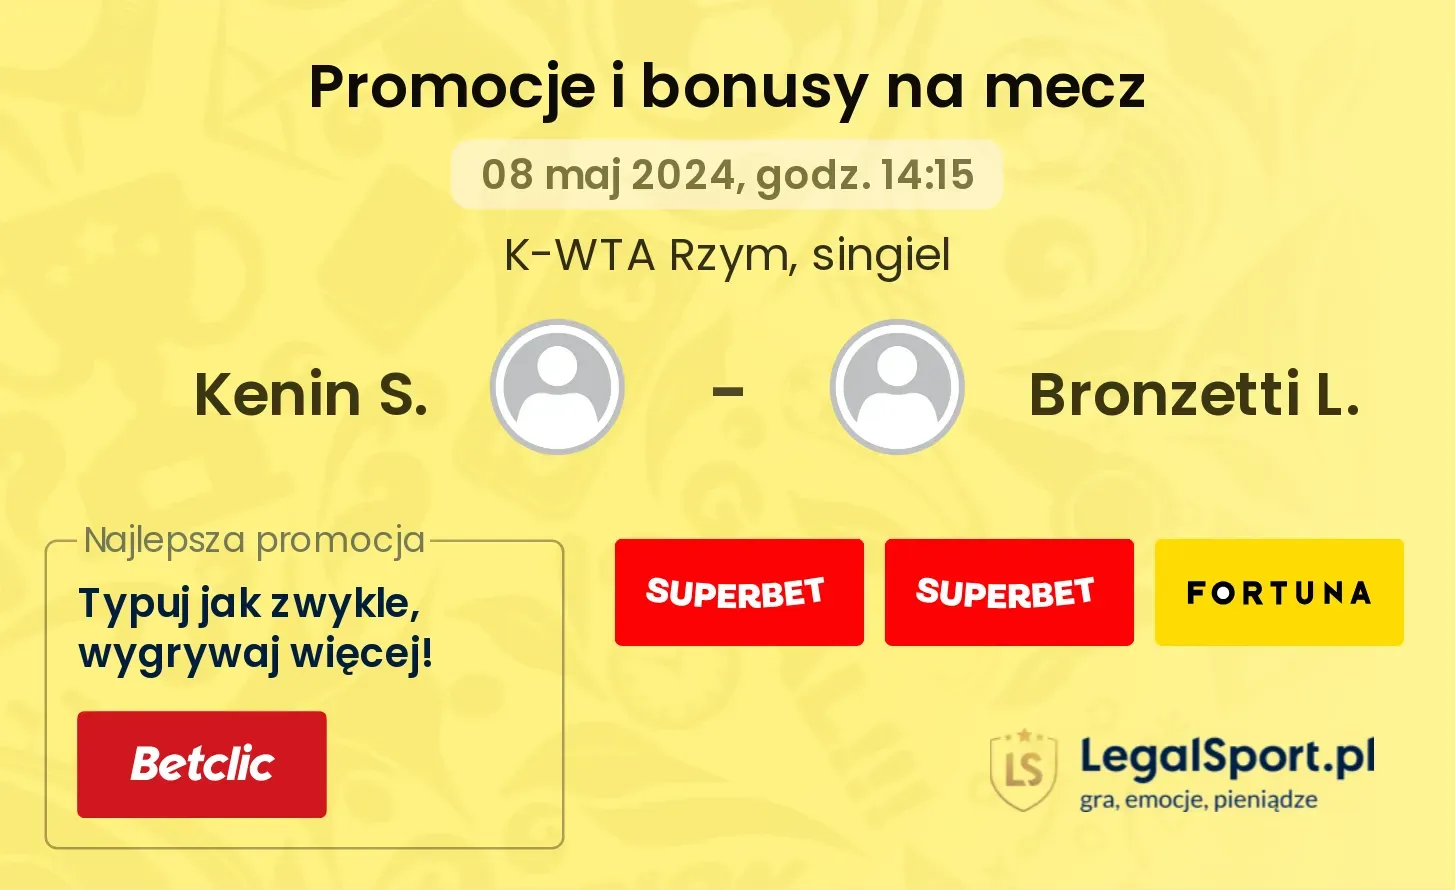 Kenin S. - Bronzetti L. promocje bonusy na mecz